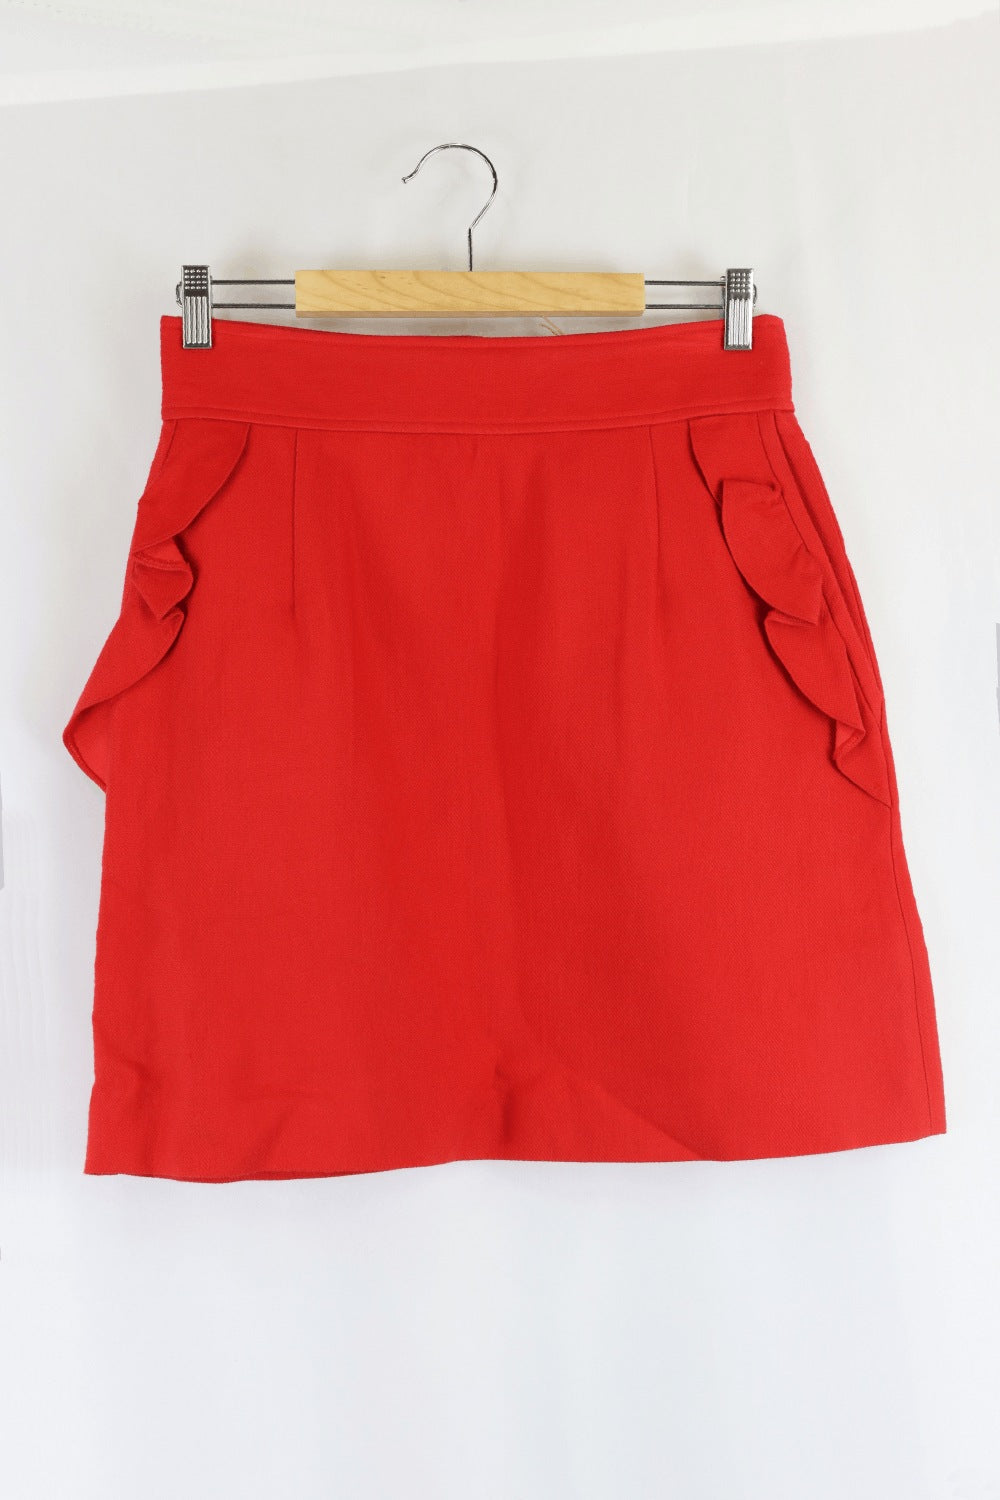 Sandro Red Skirt 3 (AU 12)